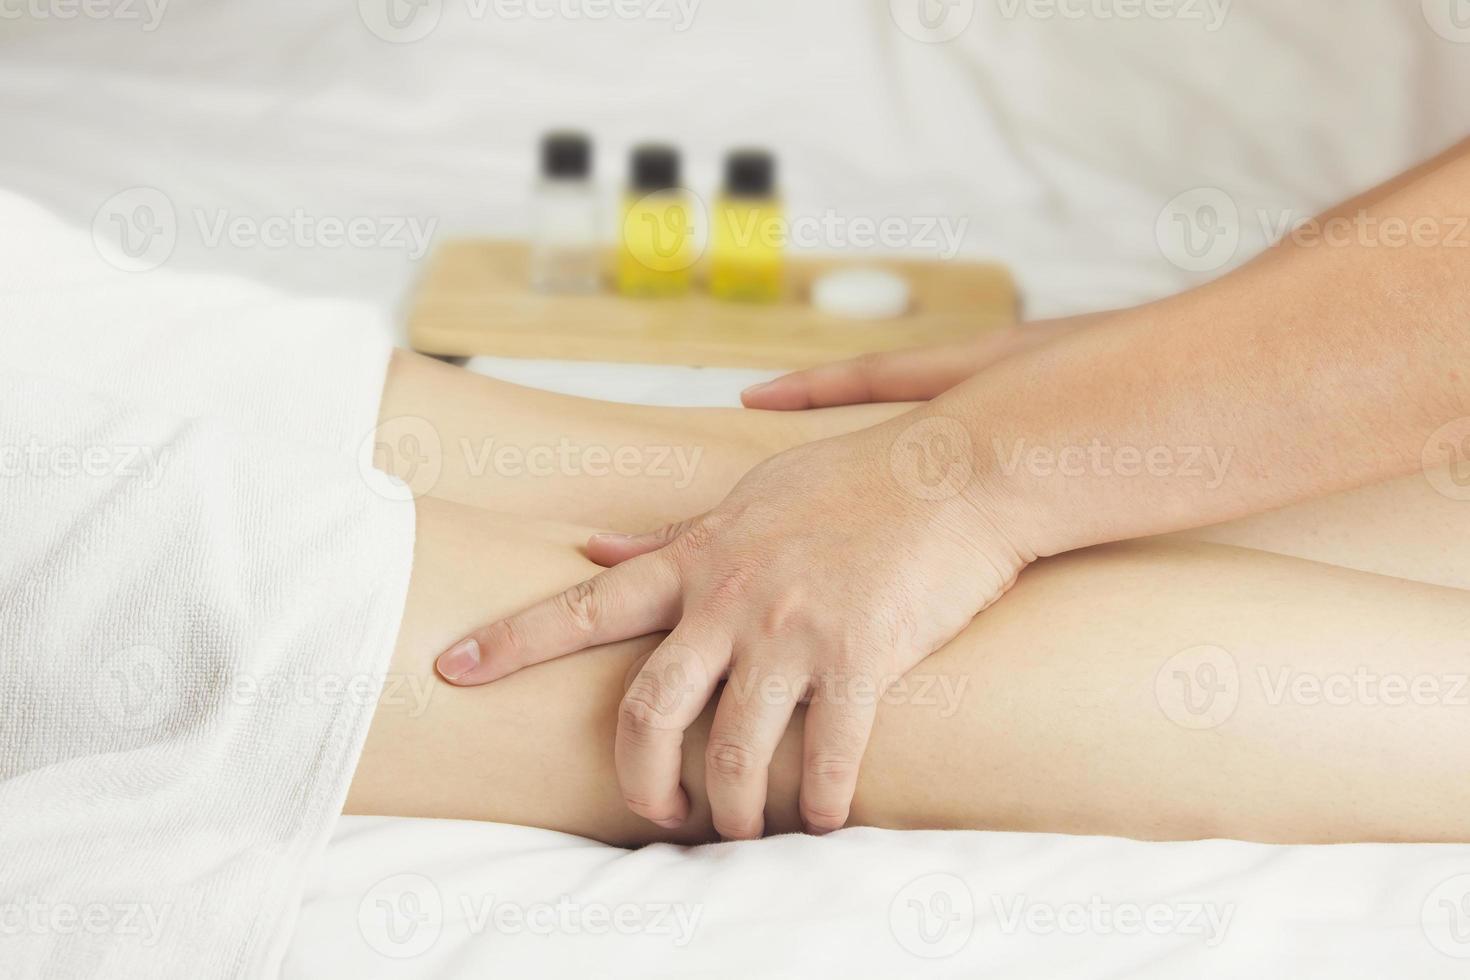 la main du massothérapeute masse les muscles du mollet de la jeune femme dans le salon de spa. concept de soins de santé, relaxation ou utilisation de produits naturels pour prendre soin de la peau des jambes photo